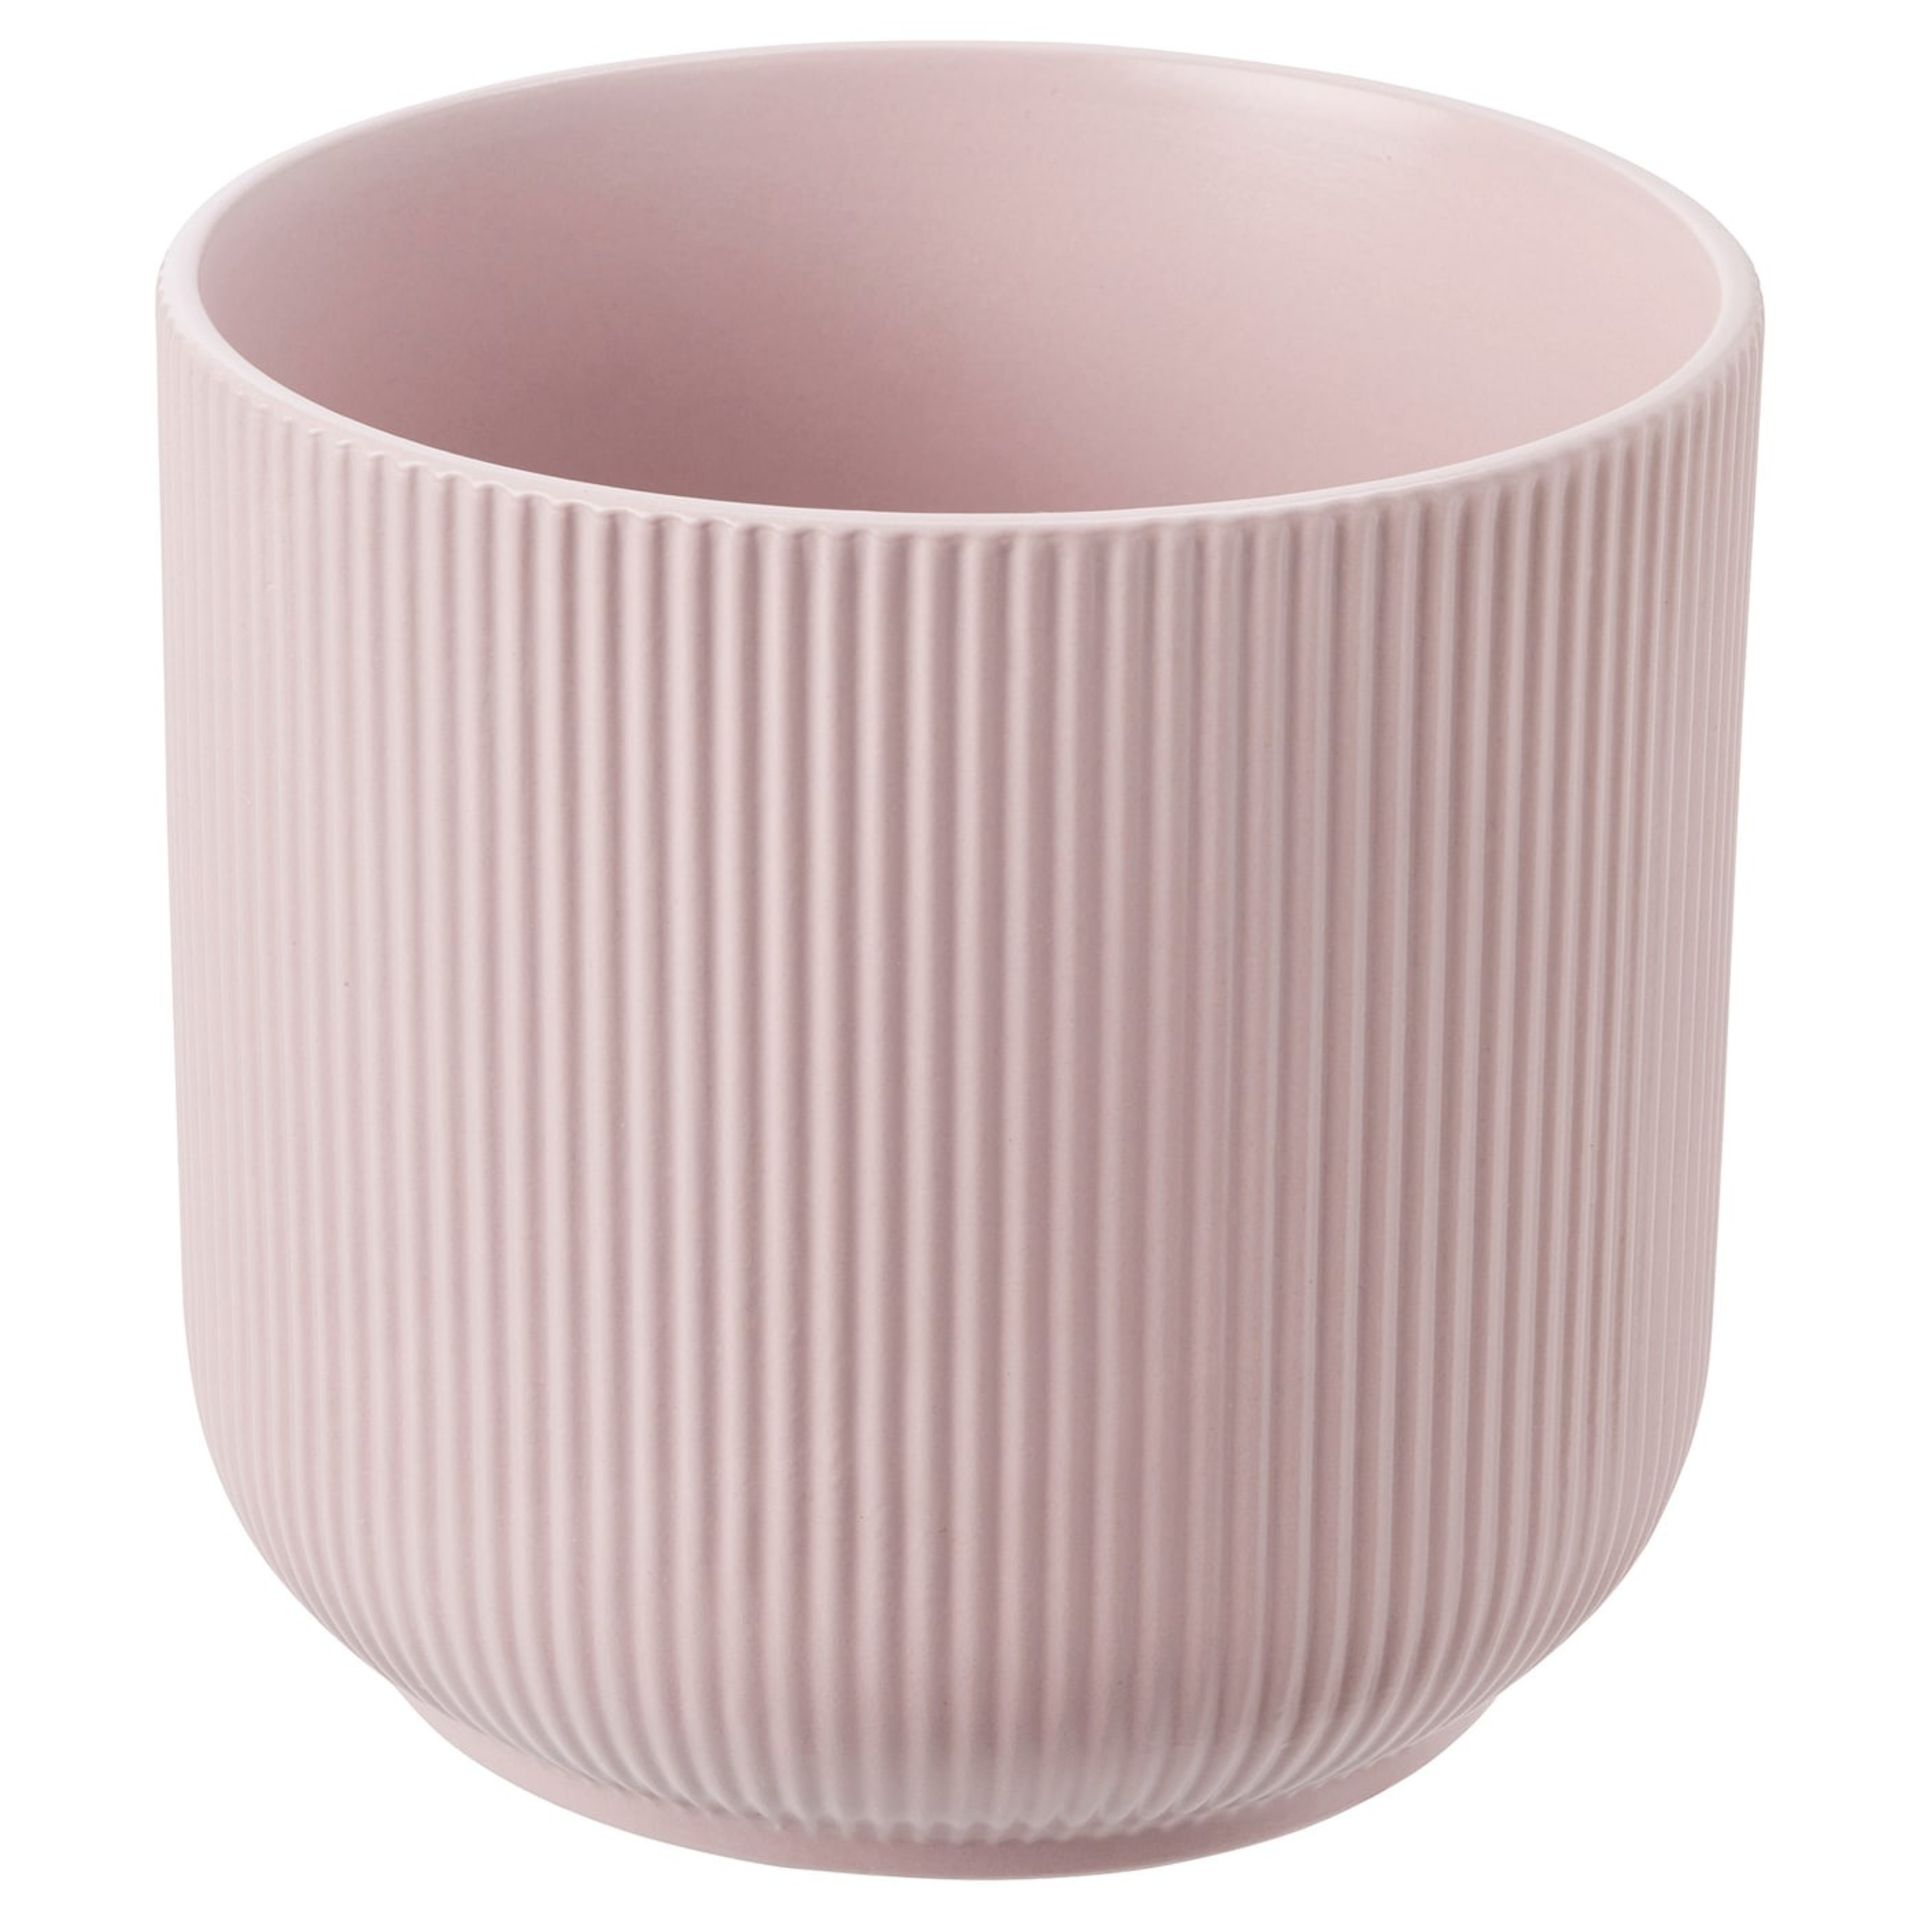 Pastle pink flower pots - ER42